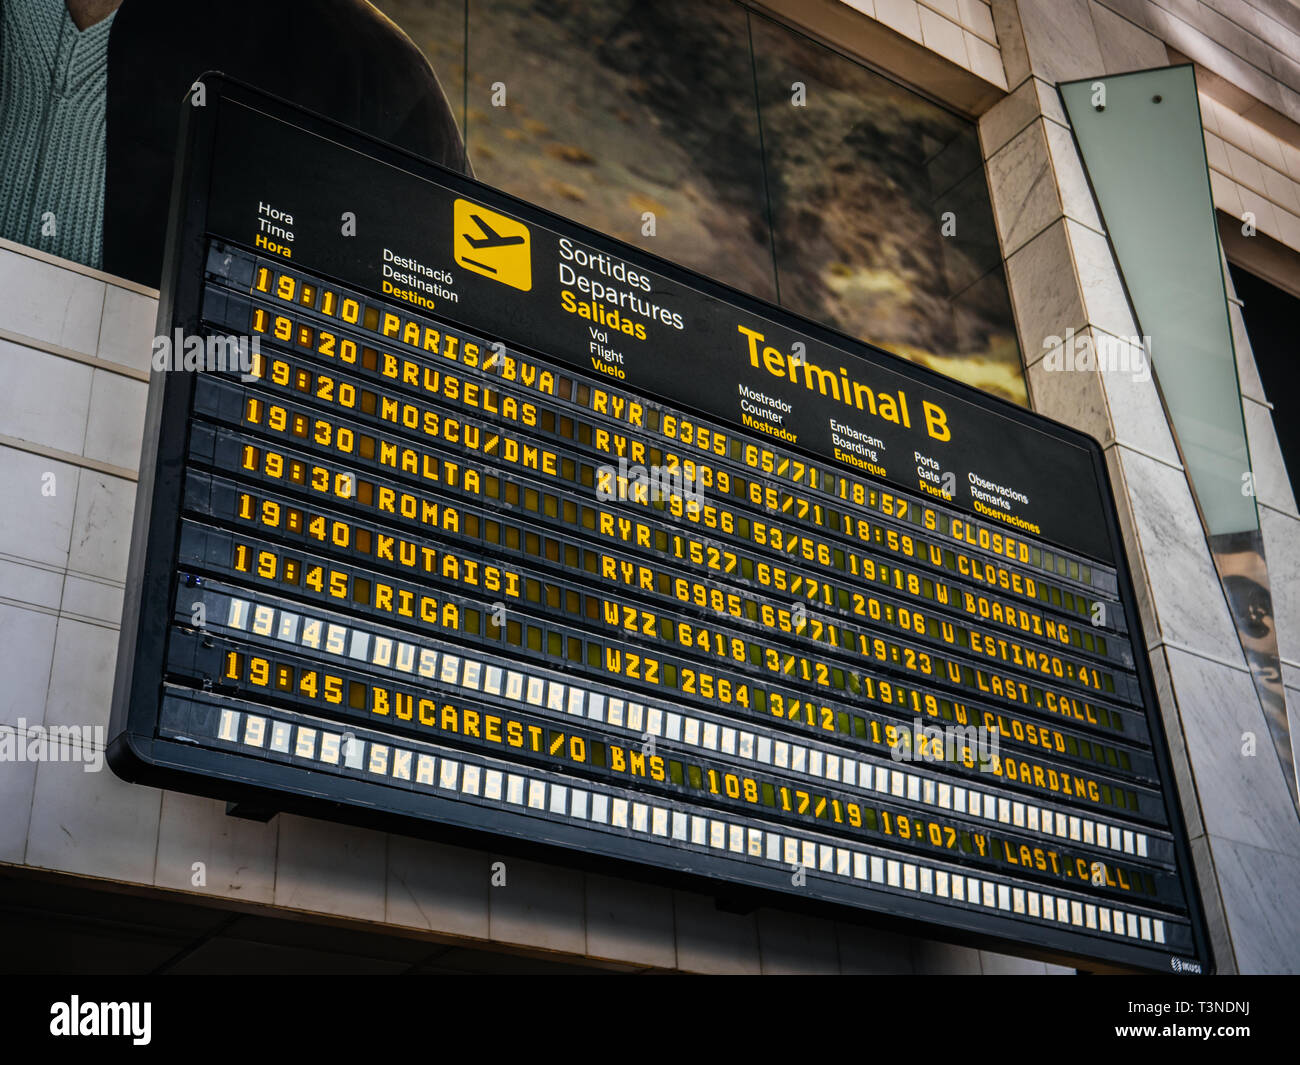 Barcelona, España - 4 Jun, 2018: ángulo de visión baja de electrónica  moderna junta de salida en el aeropuerto con horarios y vuelos diversas  International Airways destino a París, Bruselas, Moscú, Malta,